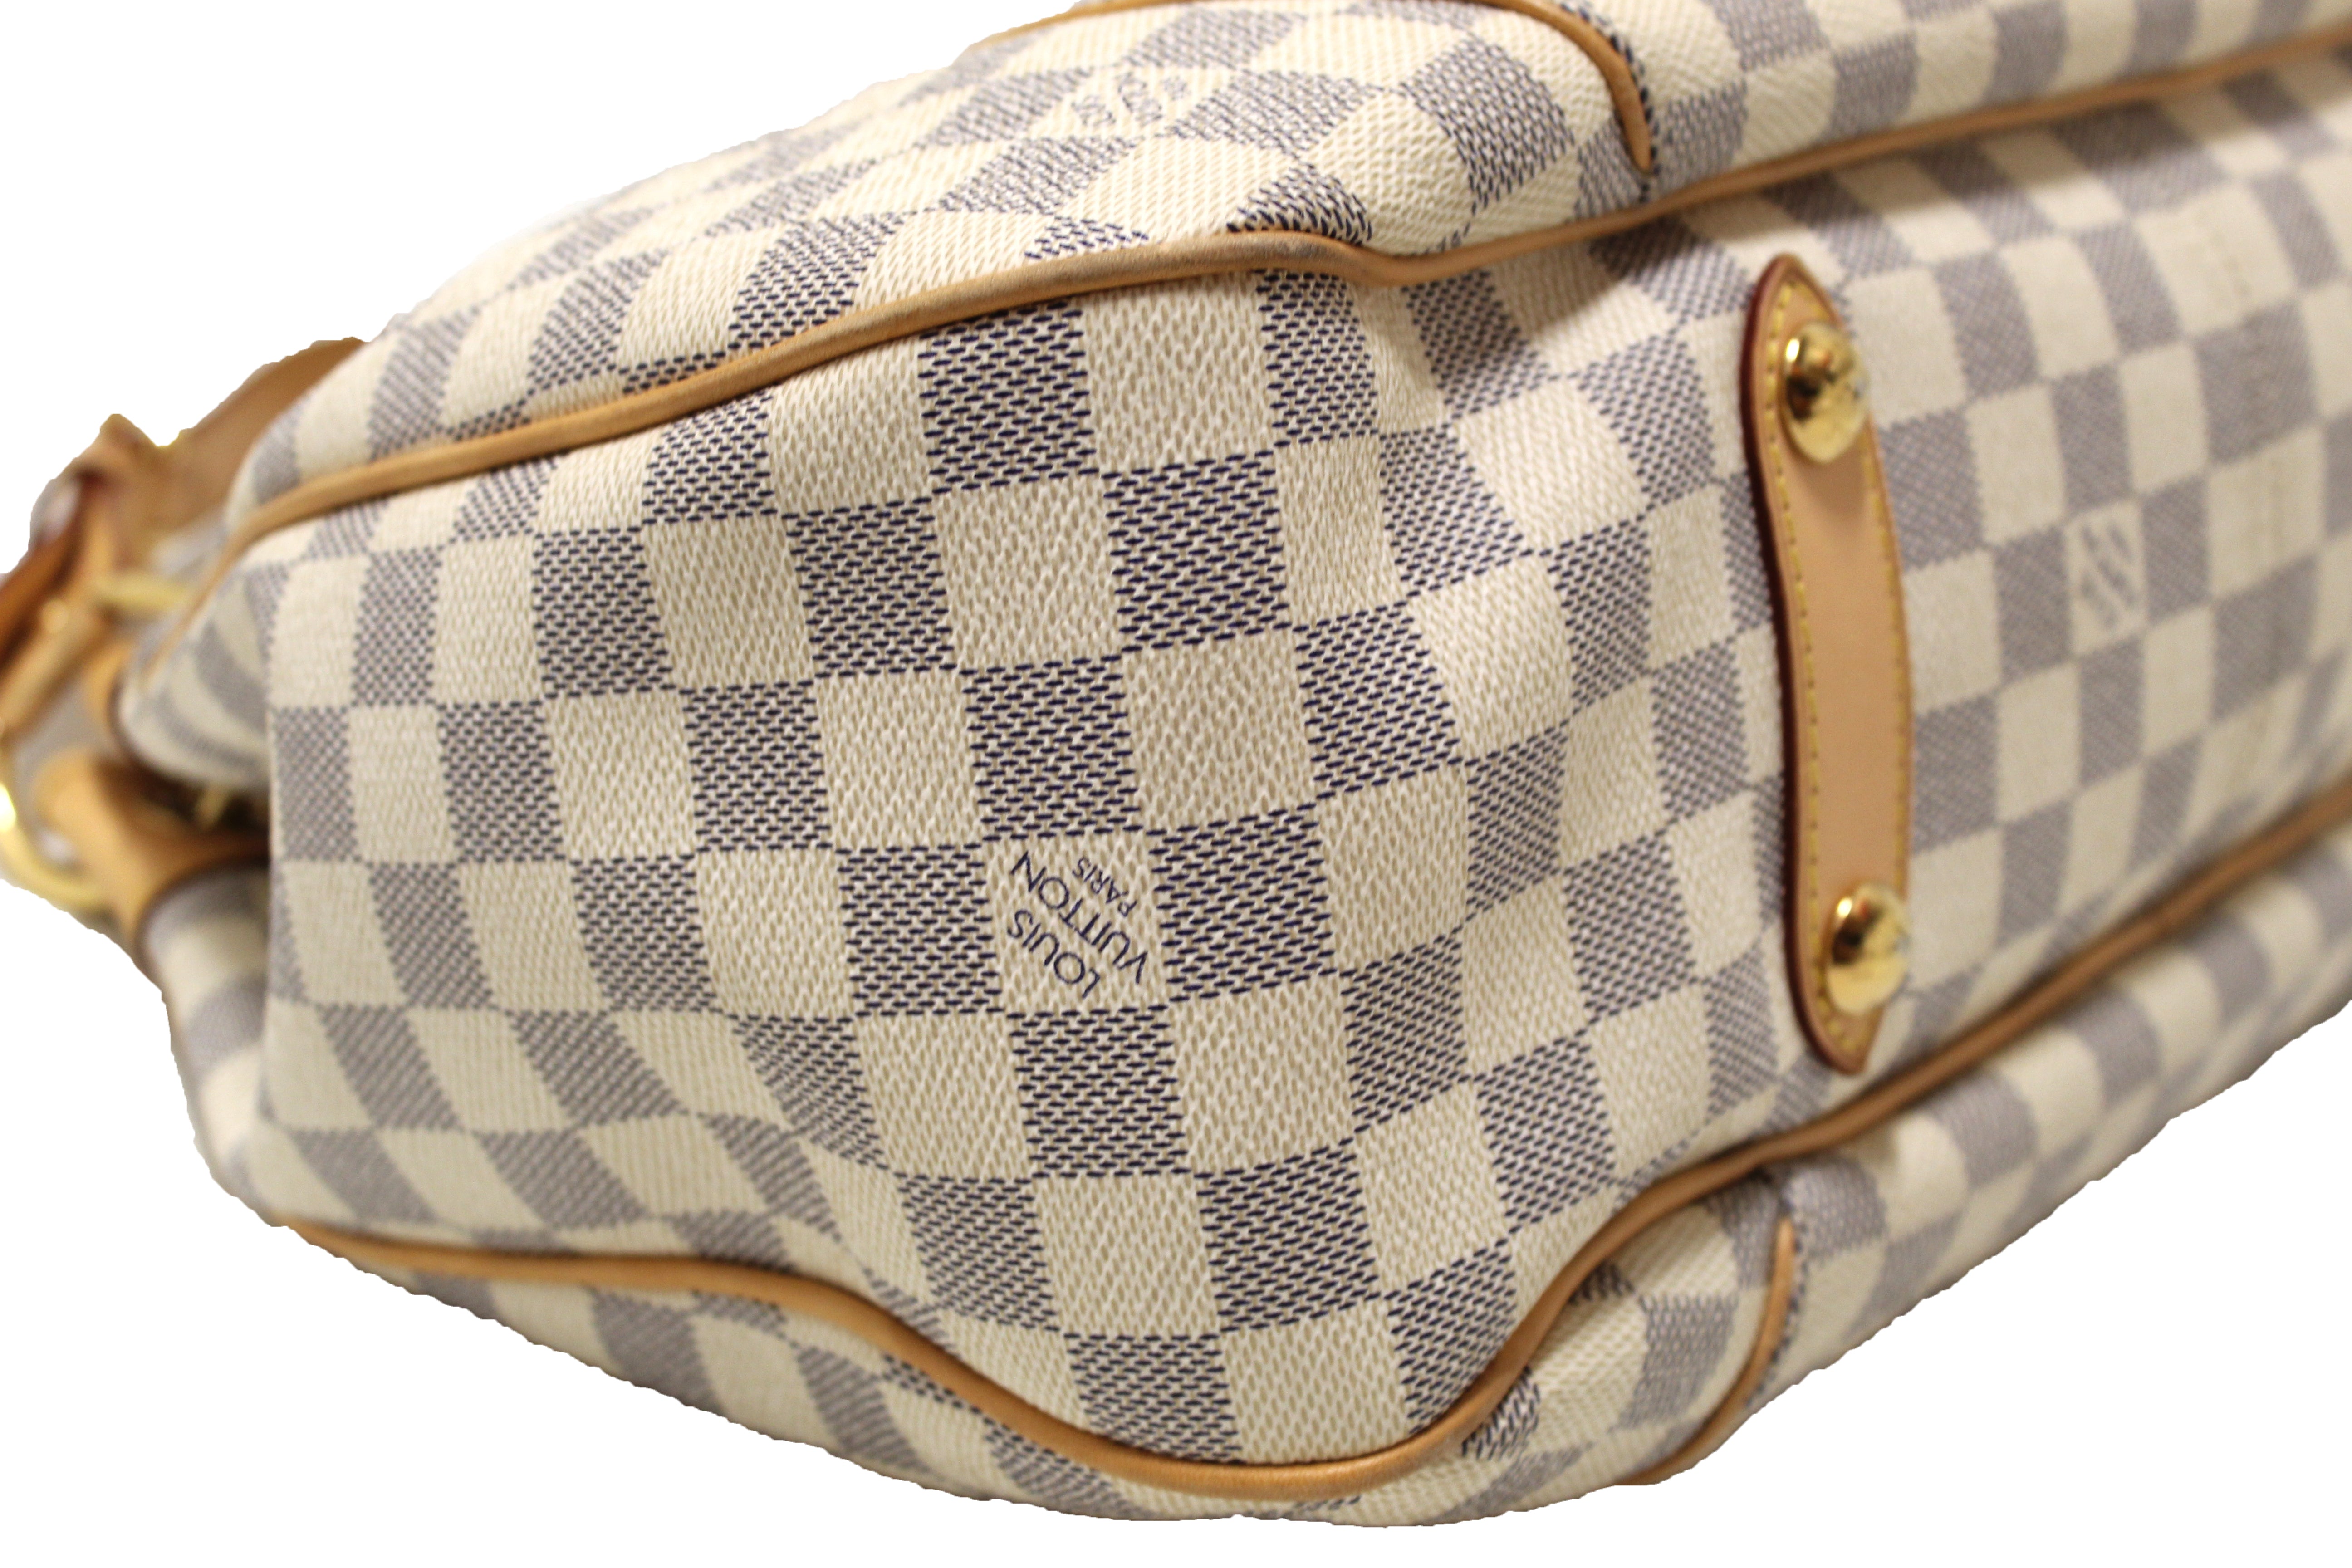 Authentic LOUIS VUITTON Galliera PM Damier Azur Tote Shoulder Bag Purse  #47994